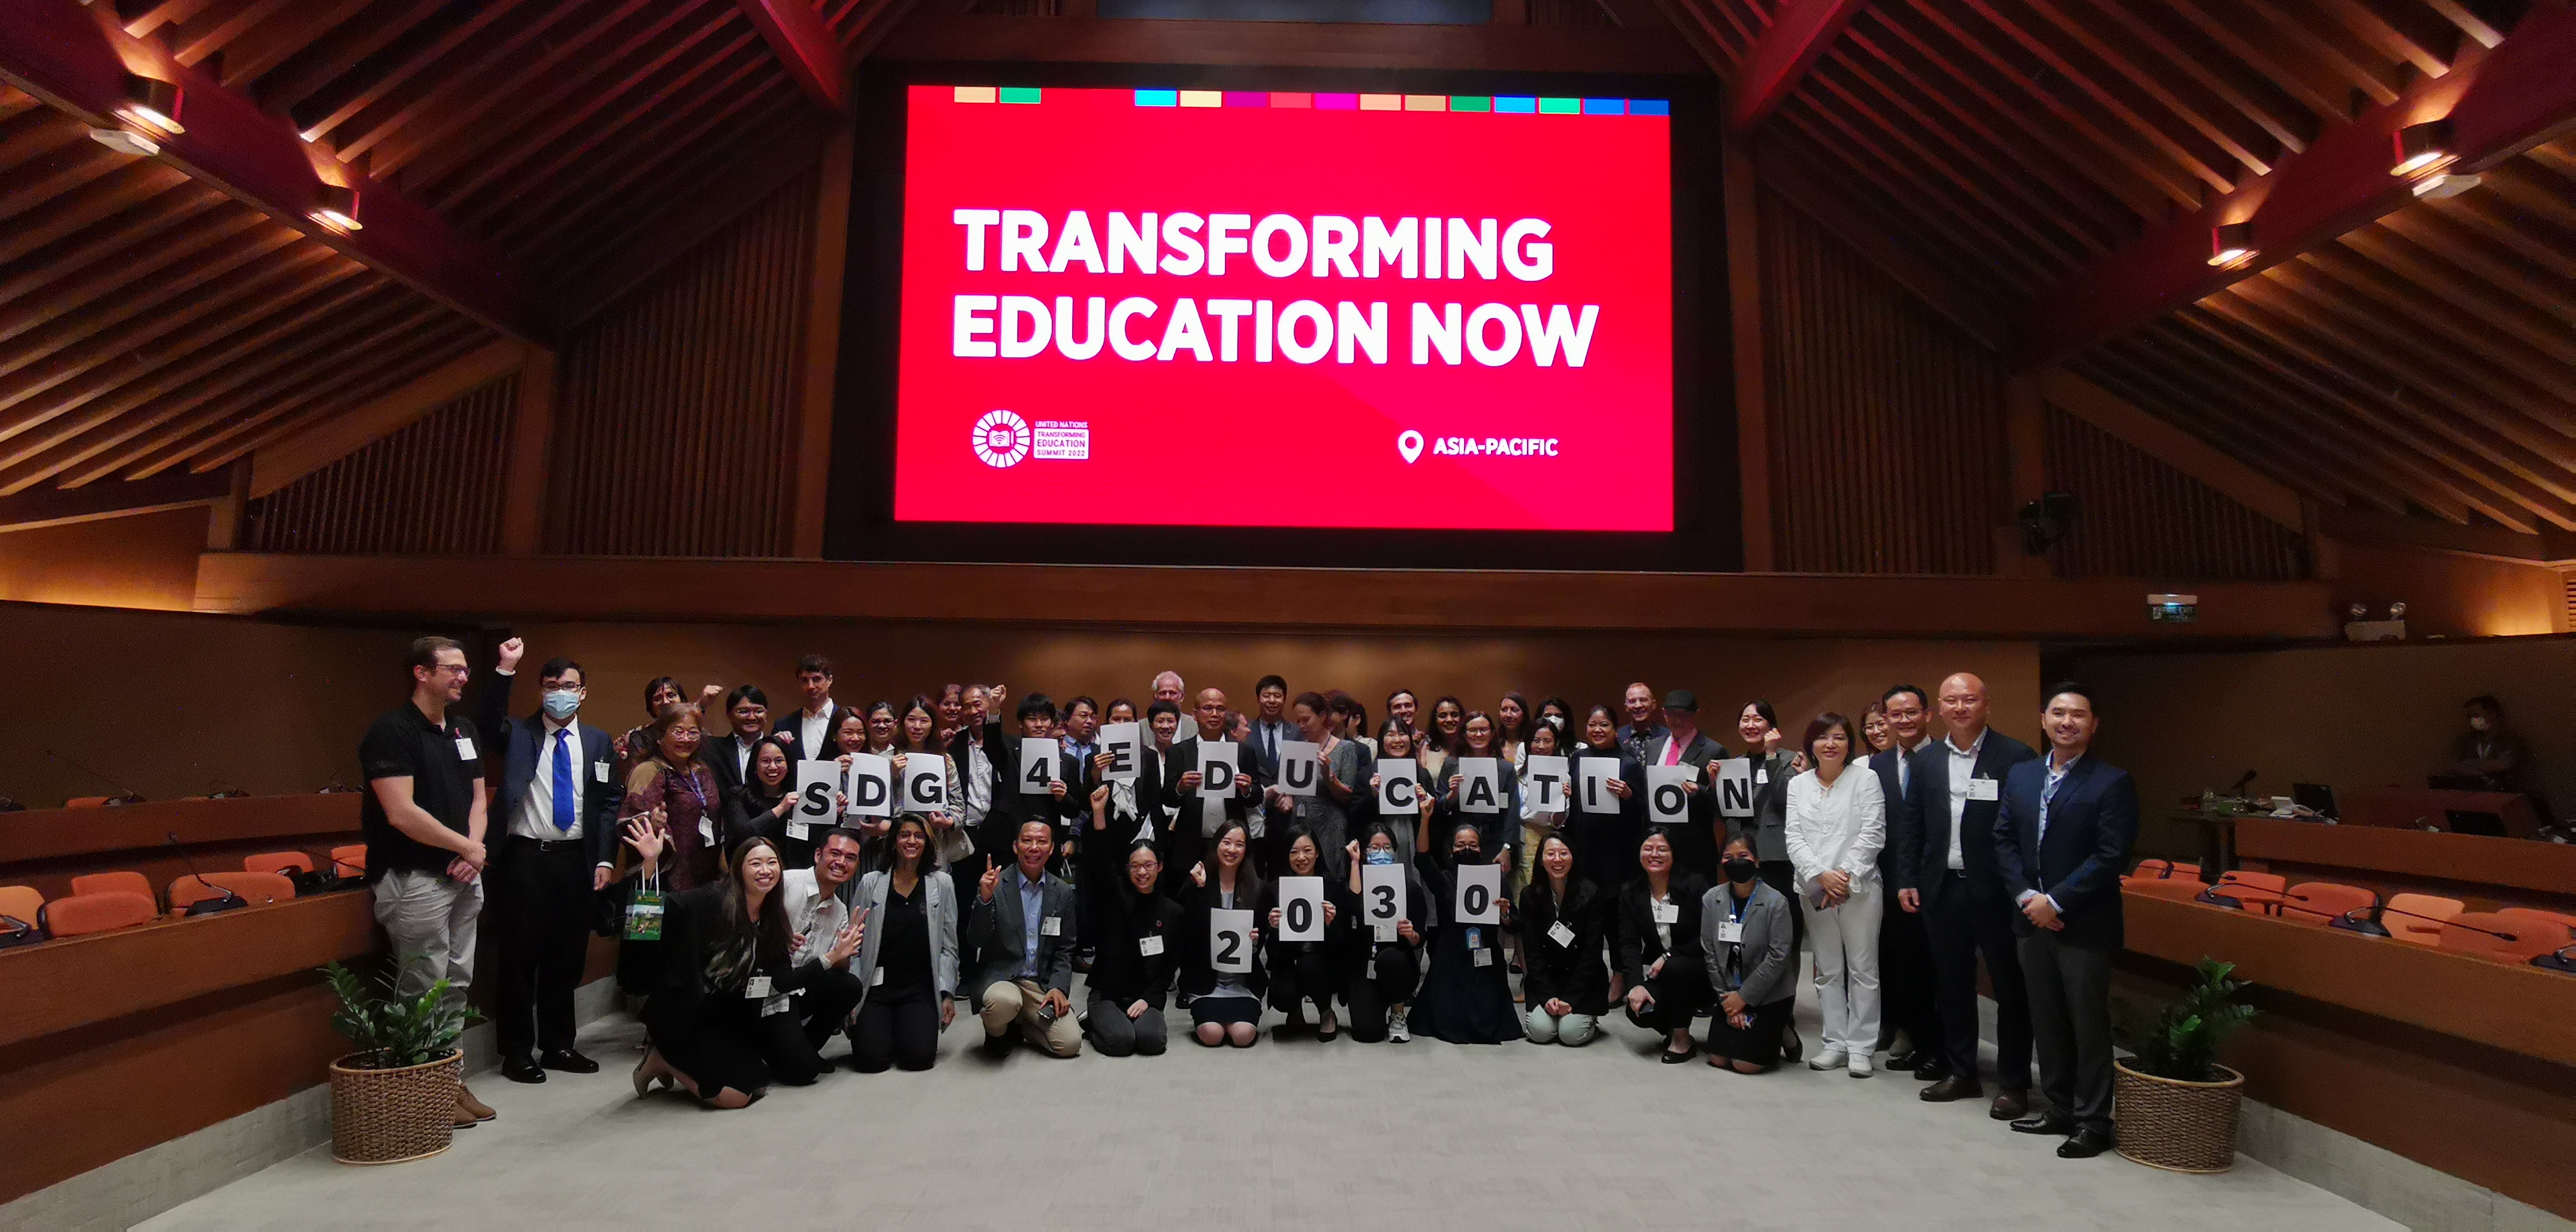 SDG4-Education2030